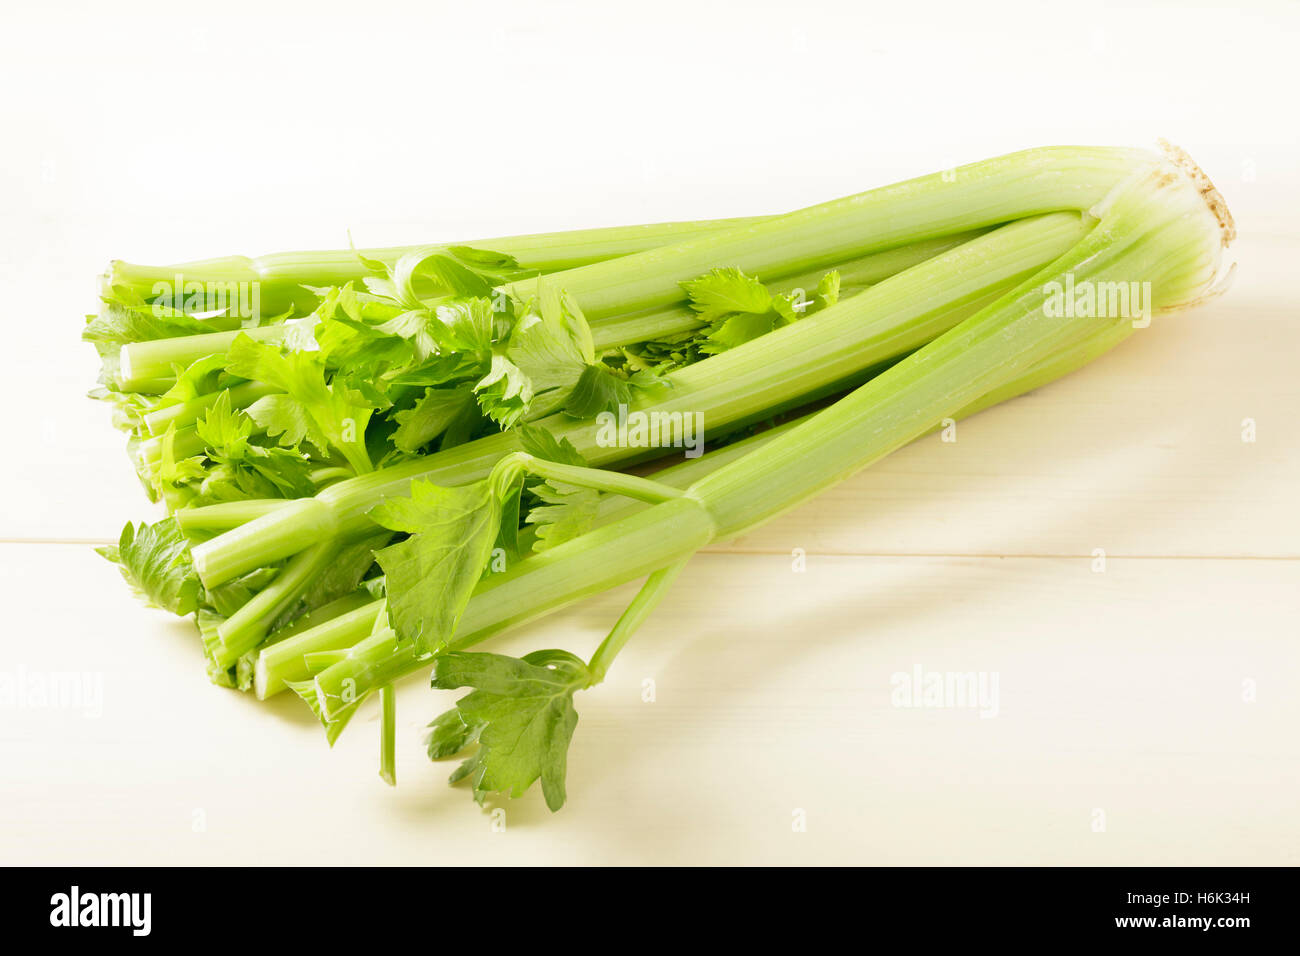 celery Stock Photo